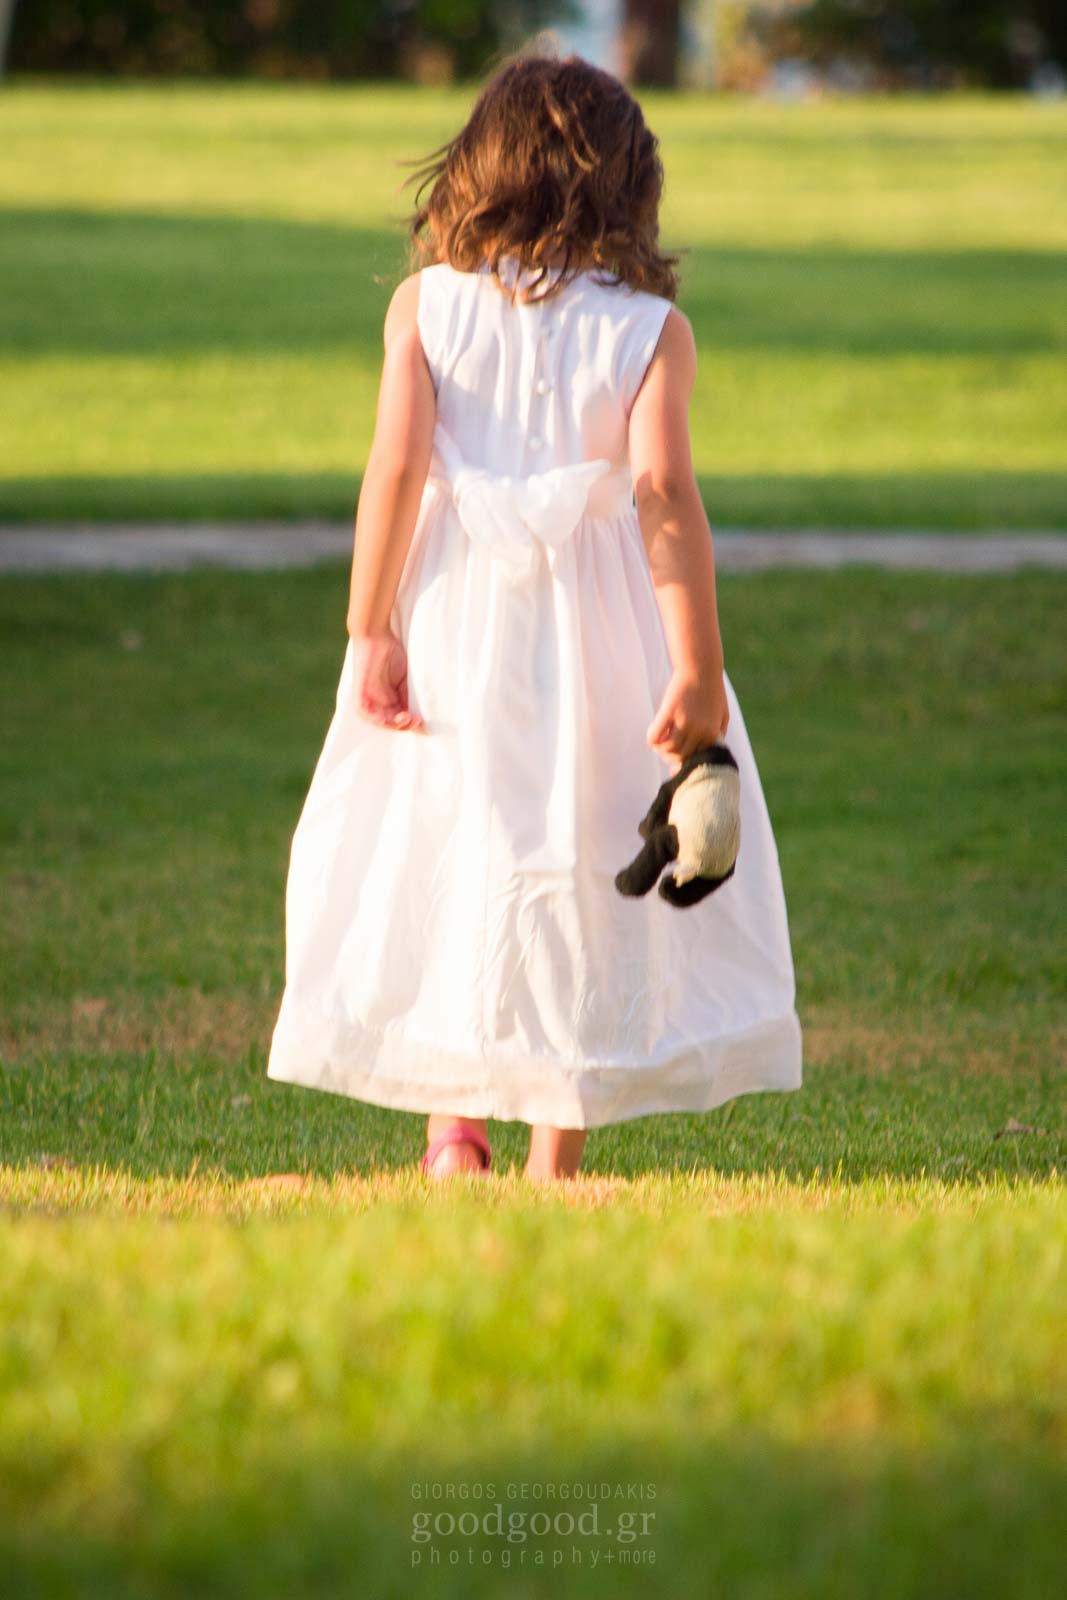 Φωτογραφία βάπτισης ενός κοριτσιού να κρατάει μία κούκλα και να στέκεται στο γρασίδι